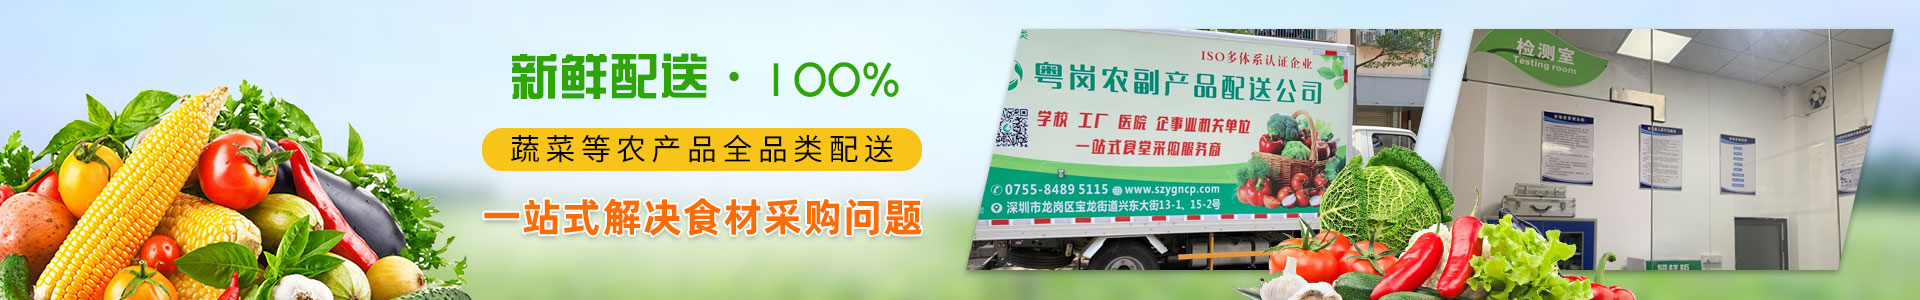 合作案例深圳市裕同包装科技有限公司粤岗蔬菜配送